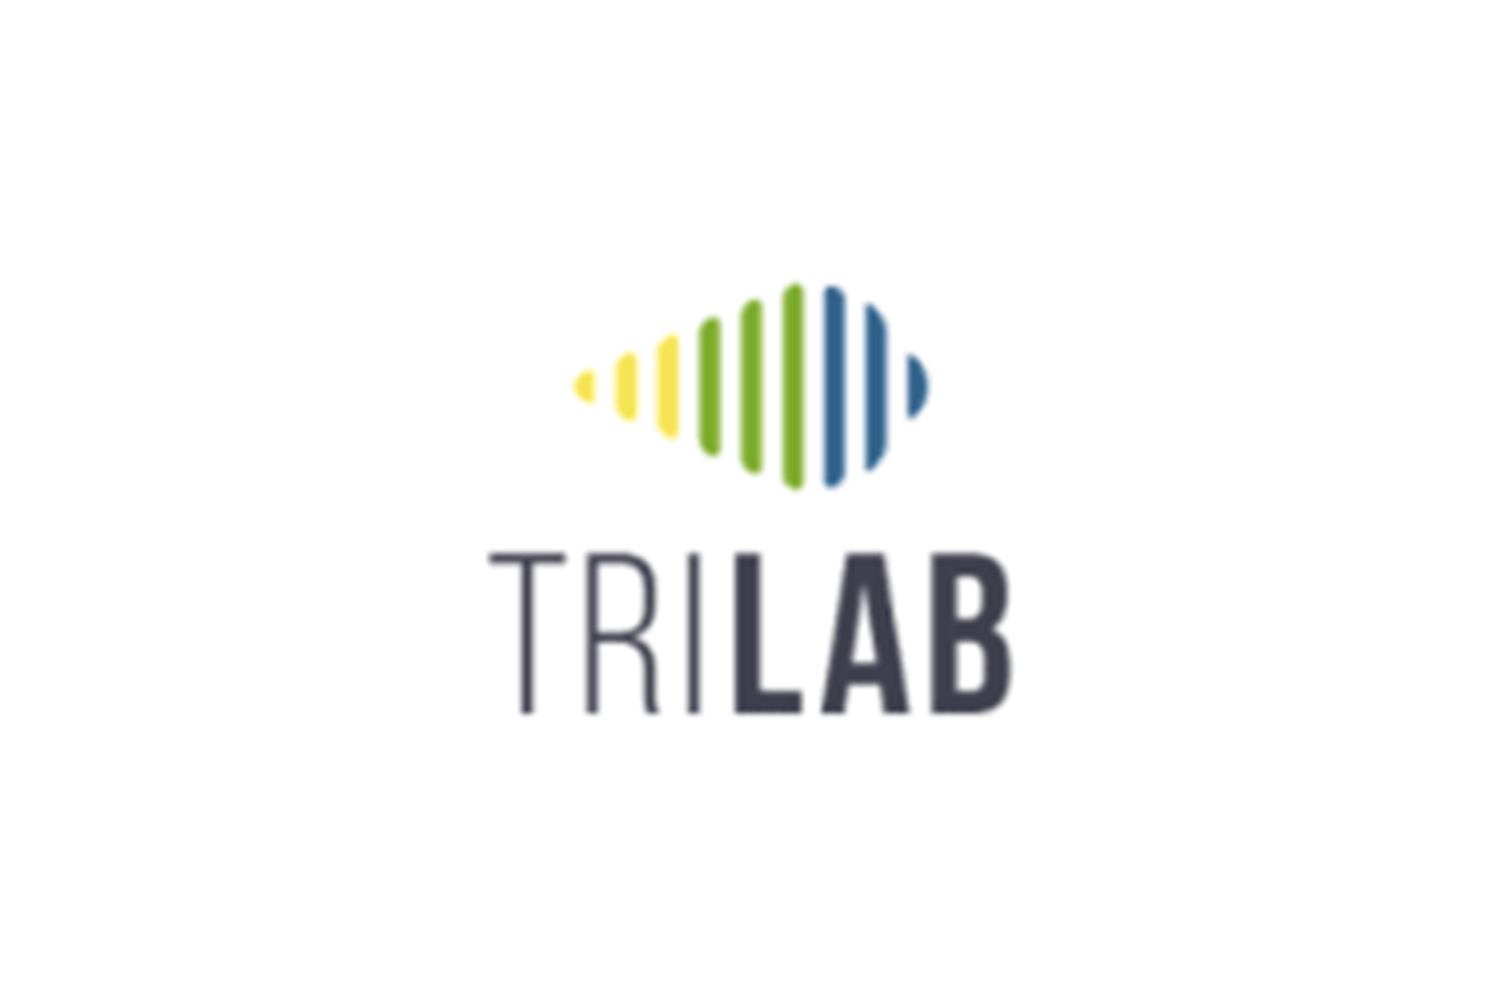 TRILAB TRILAB_logo.png